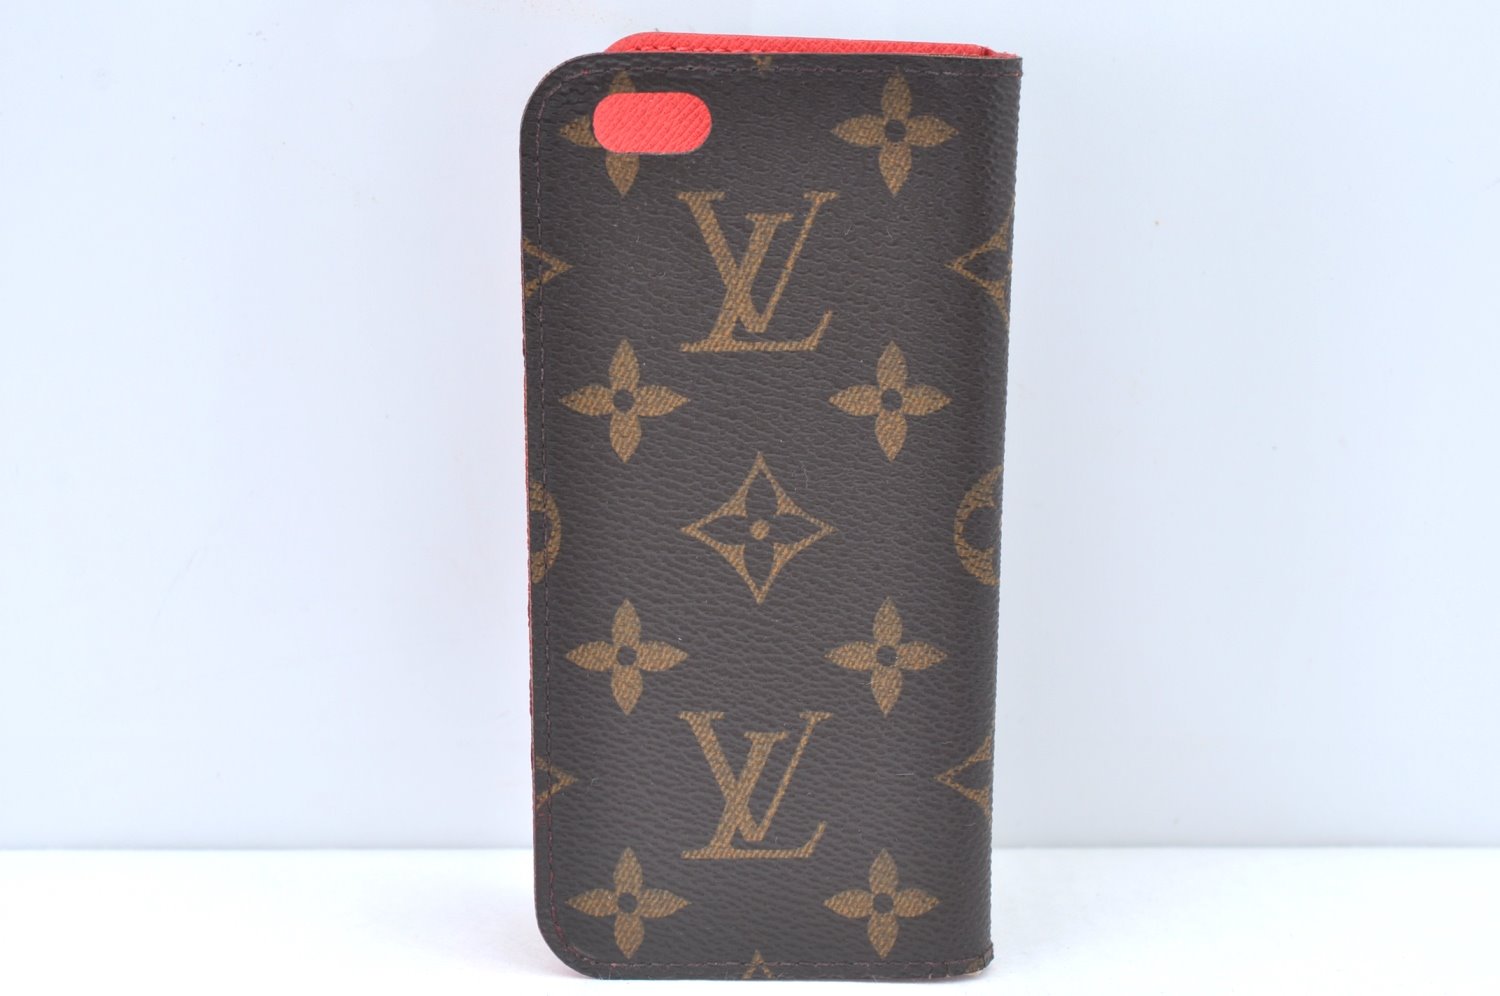 Authentic Louis Vuitton Monogram Folio Iphone 6 Case Red M61616 LV K6058